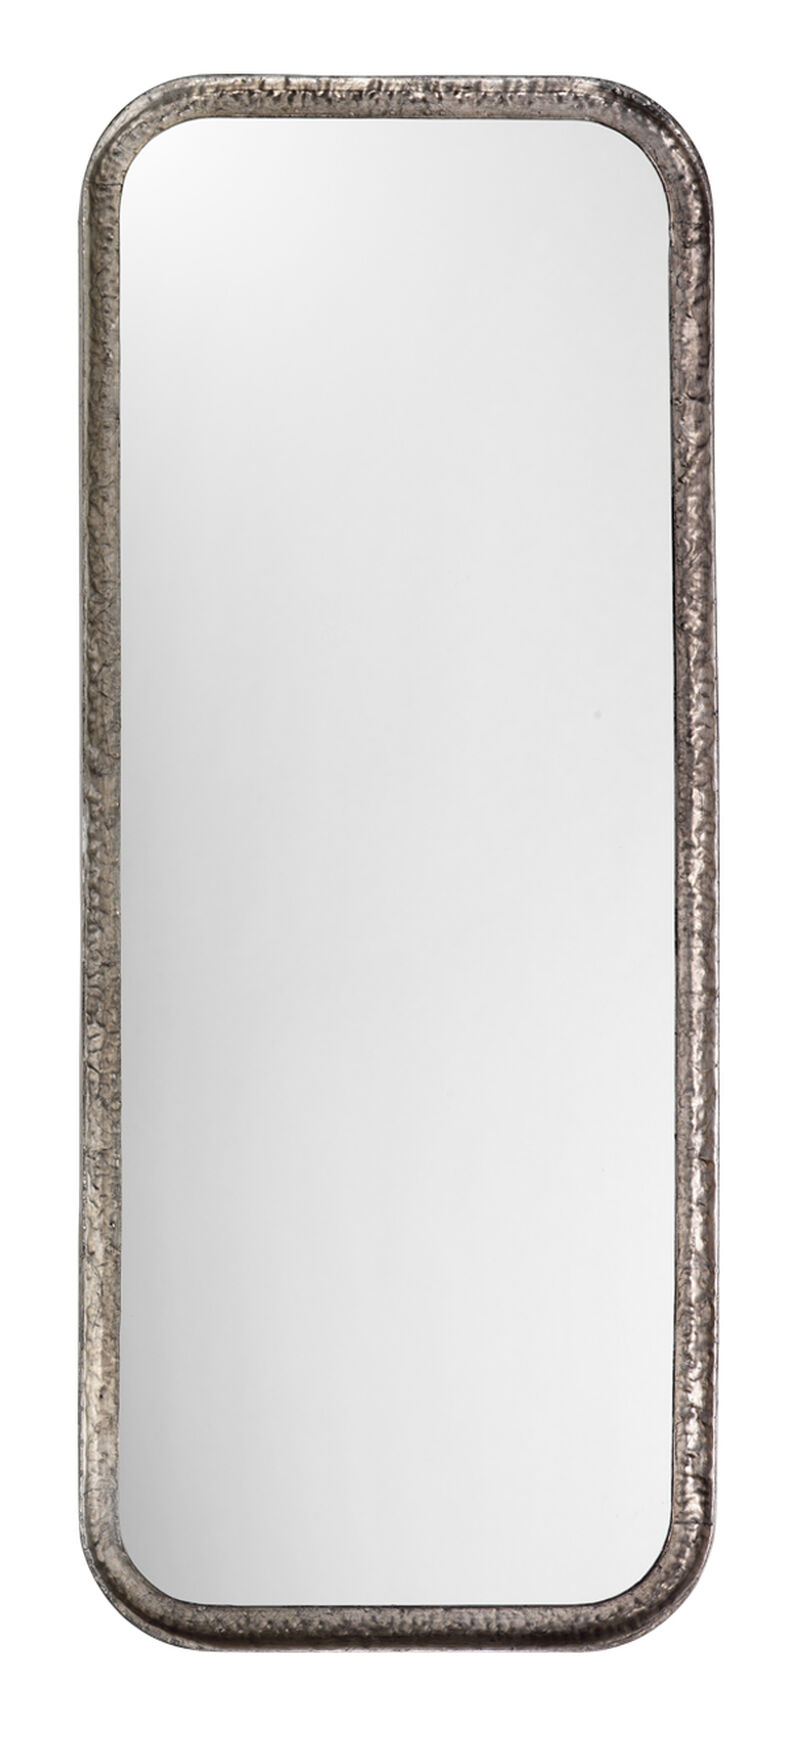 Capital Iron Mirror, Silver Leaf